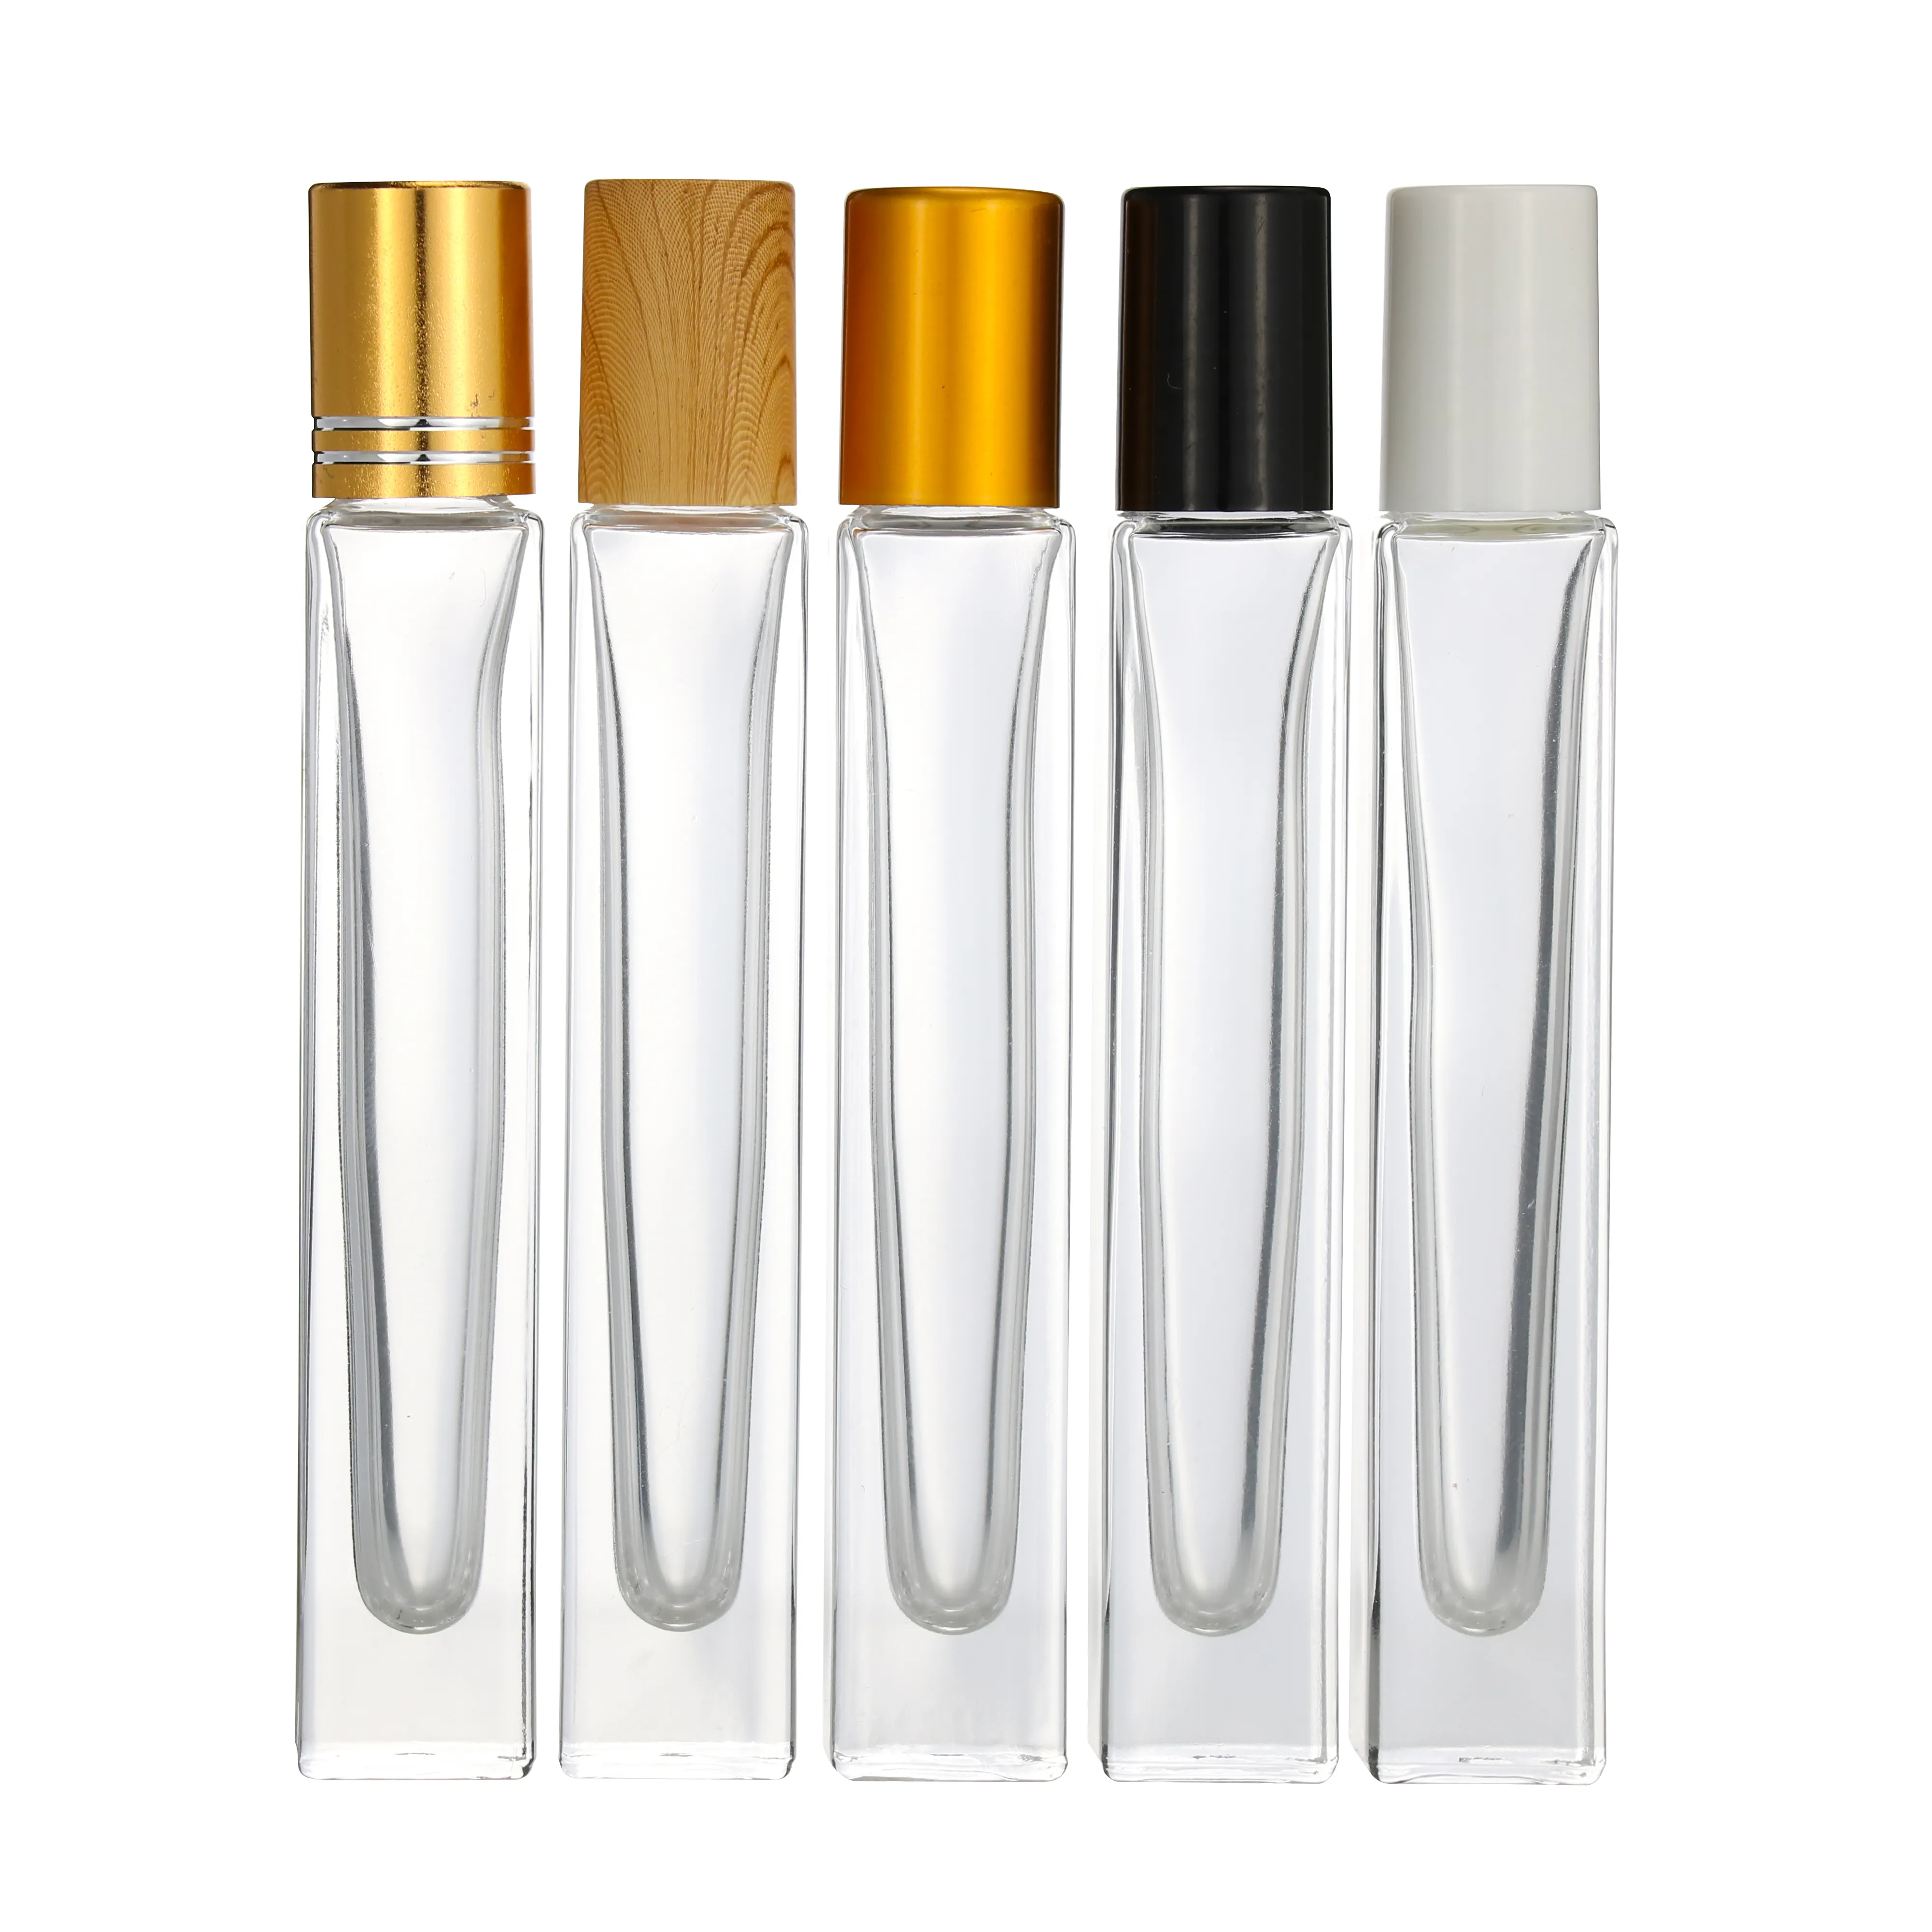 Bouteille de parfum 10ml, 30ml, 50ml, 100ml, contenant cosmétique, en verre transparent, avec capuchons de pompe, en or, argent, noir